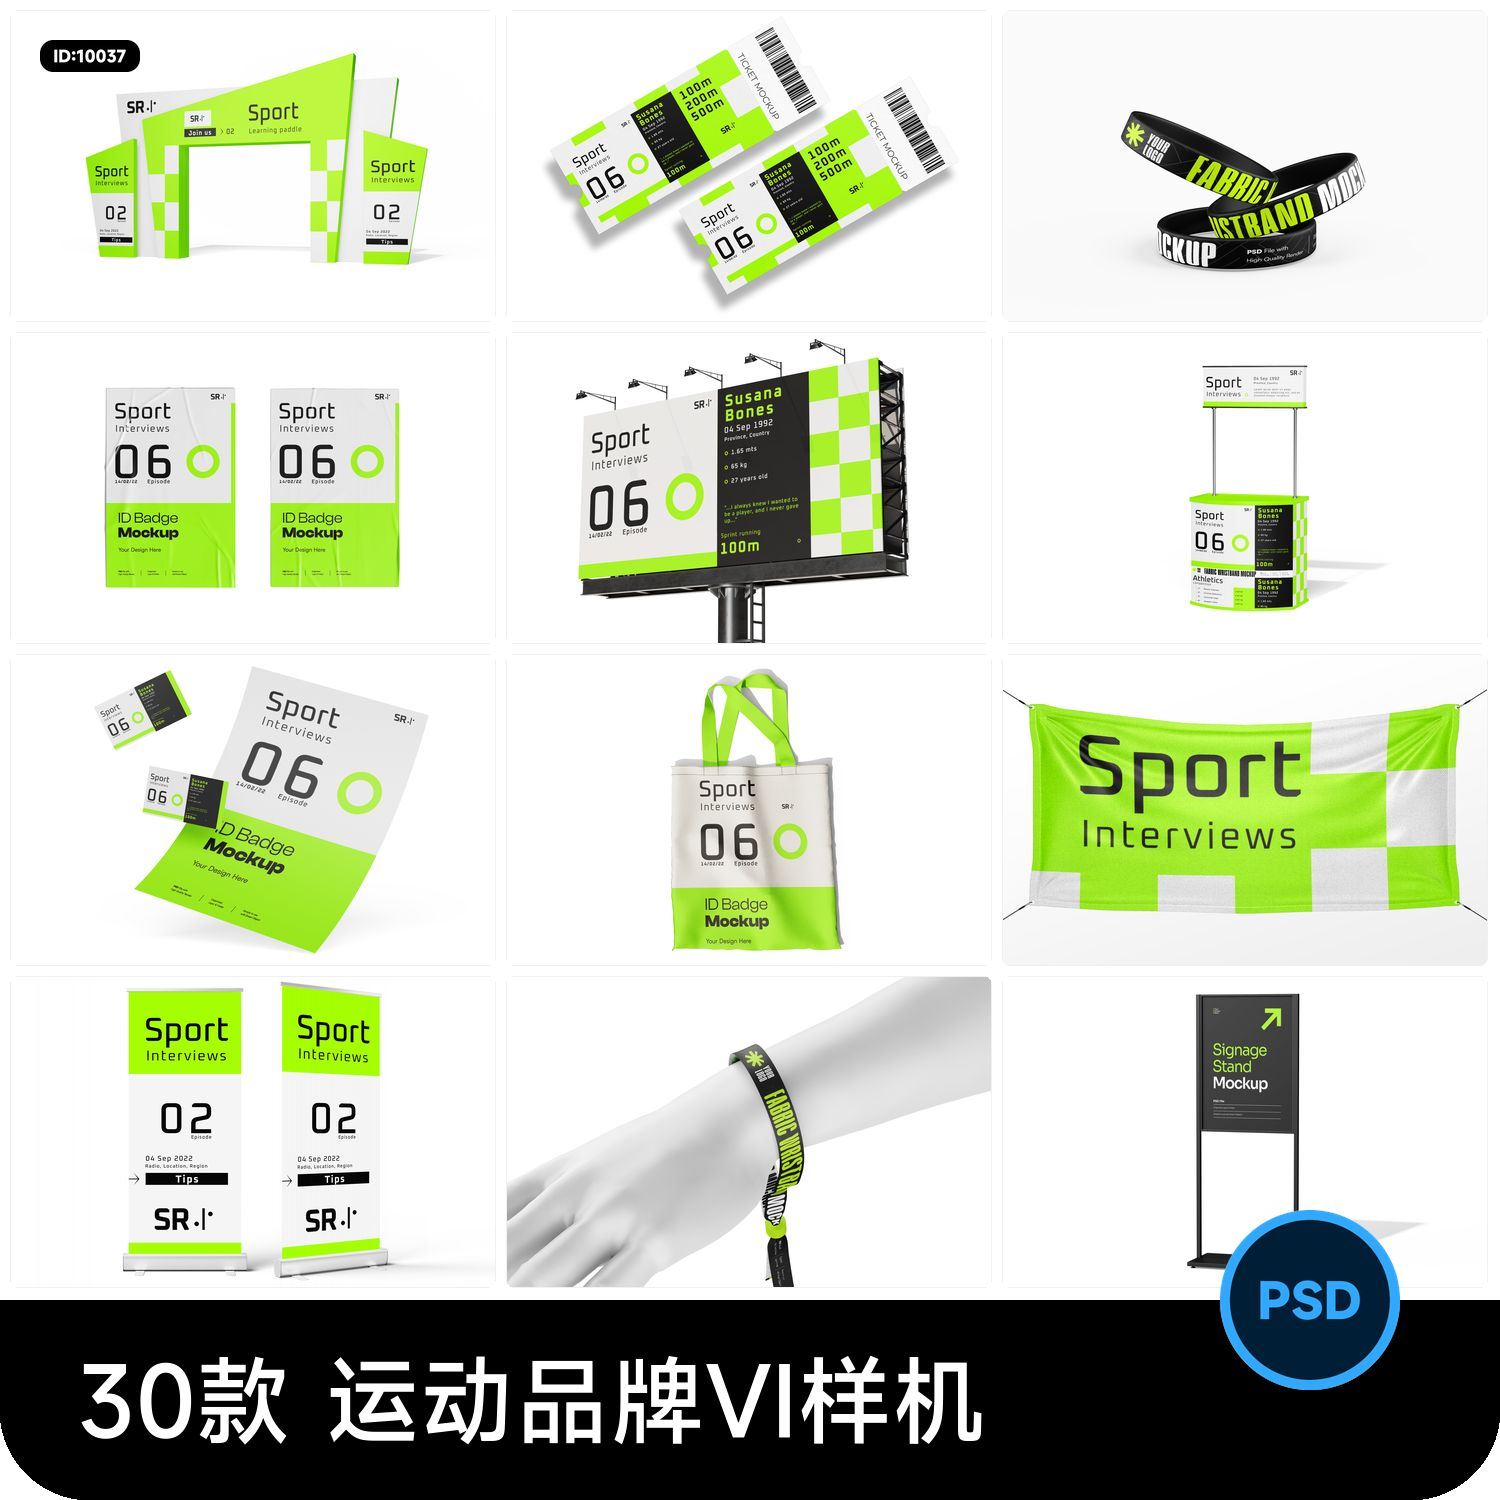 体育运动系列品牌VI周边产品包装设计效果文创贴图样机psd素材